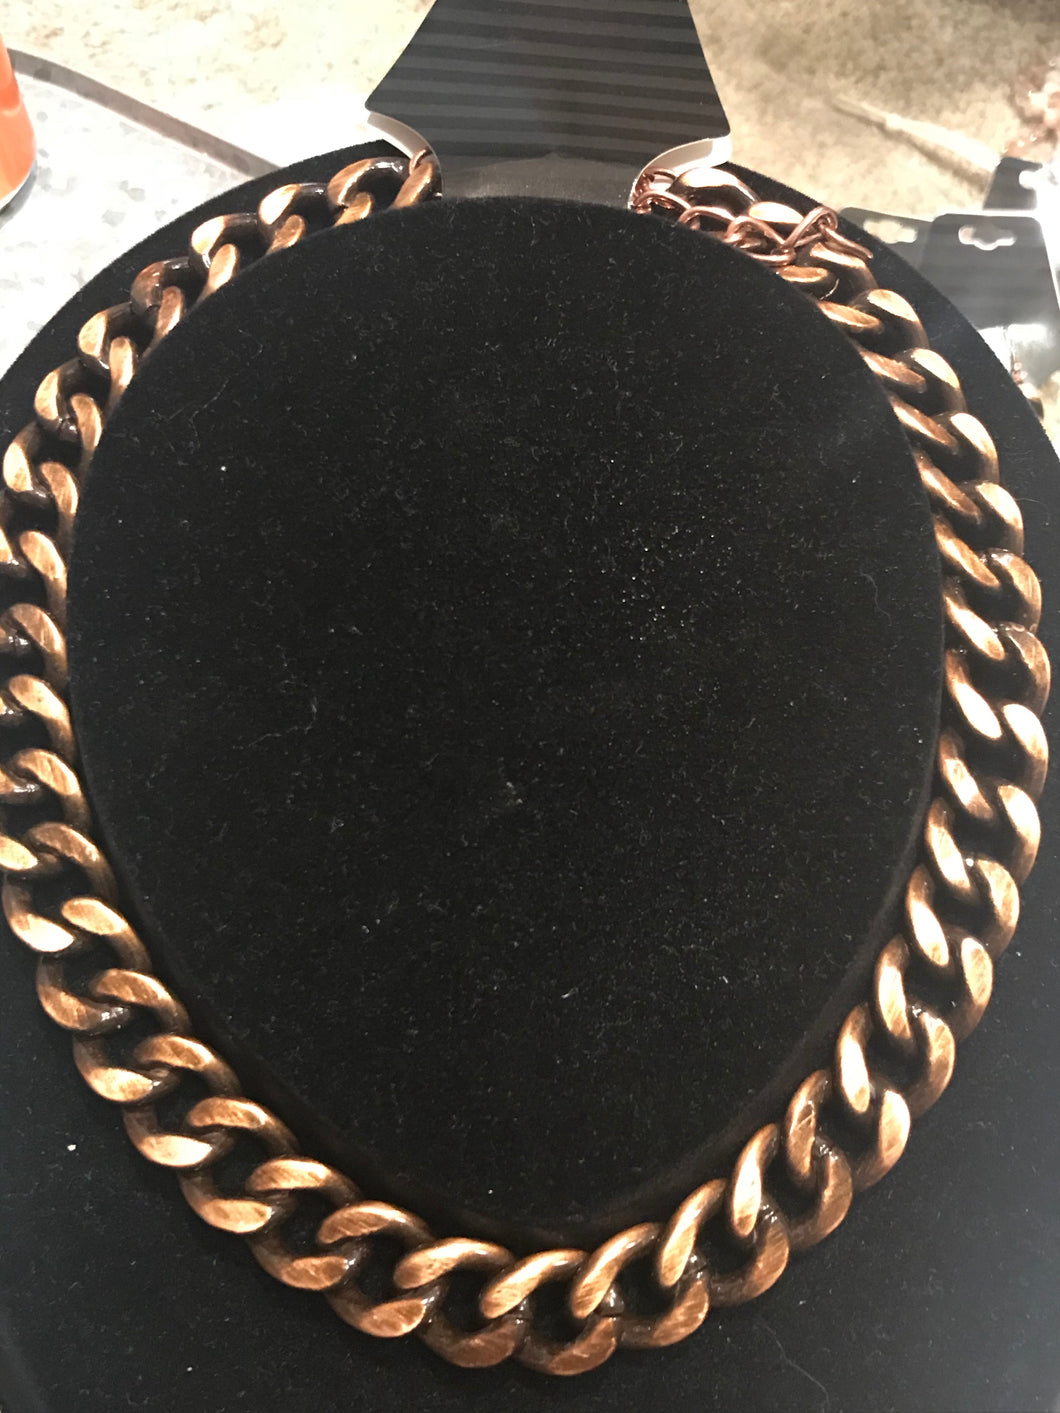 Antique Bronze Chain Necklace